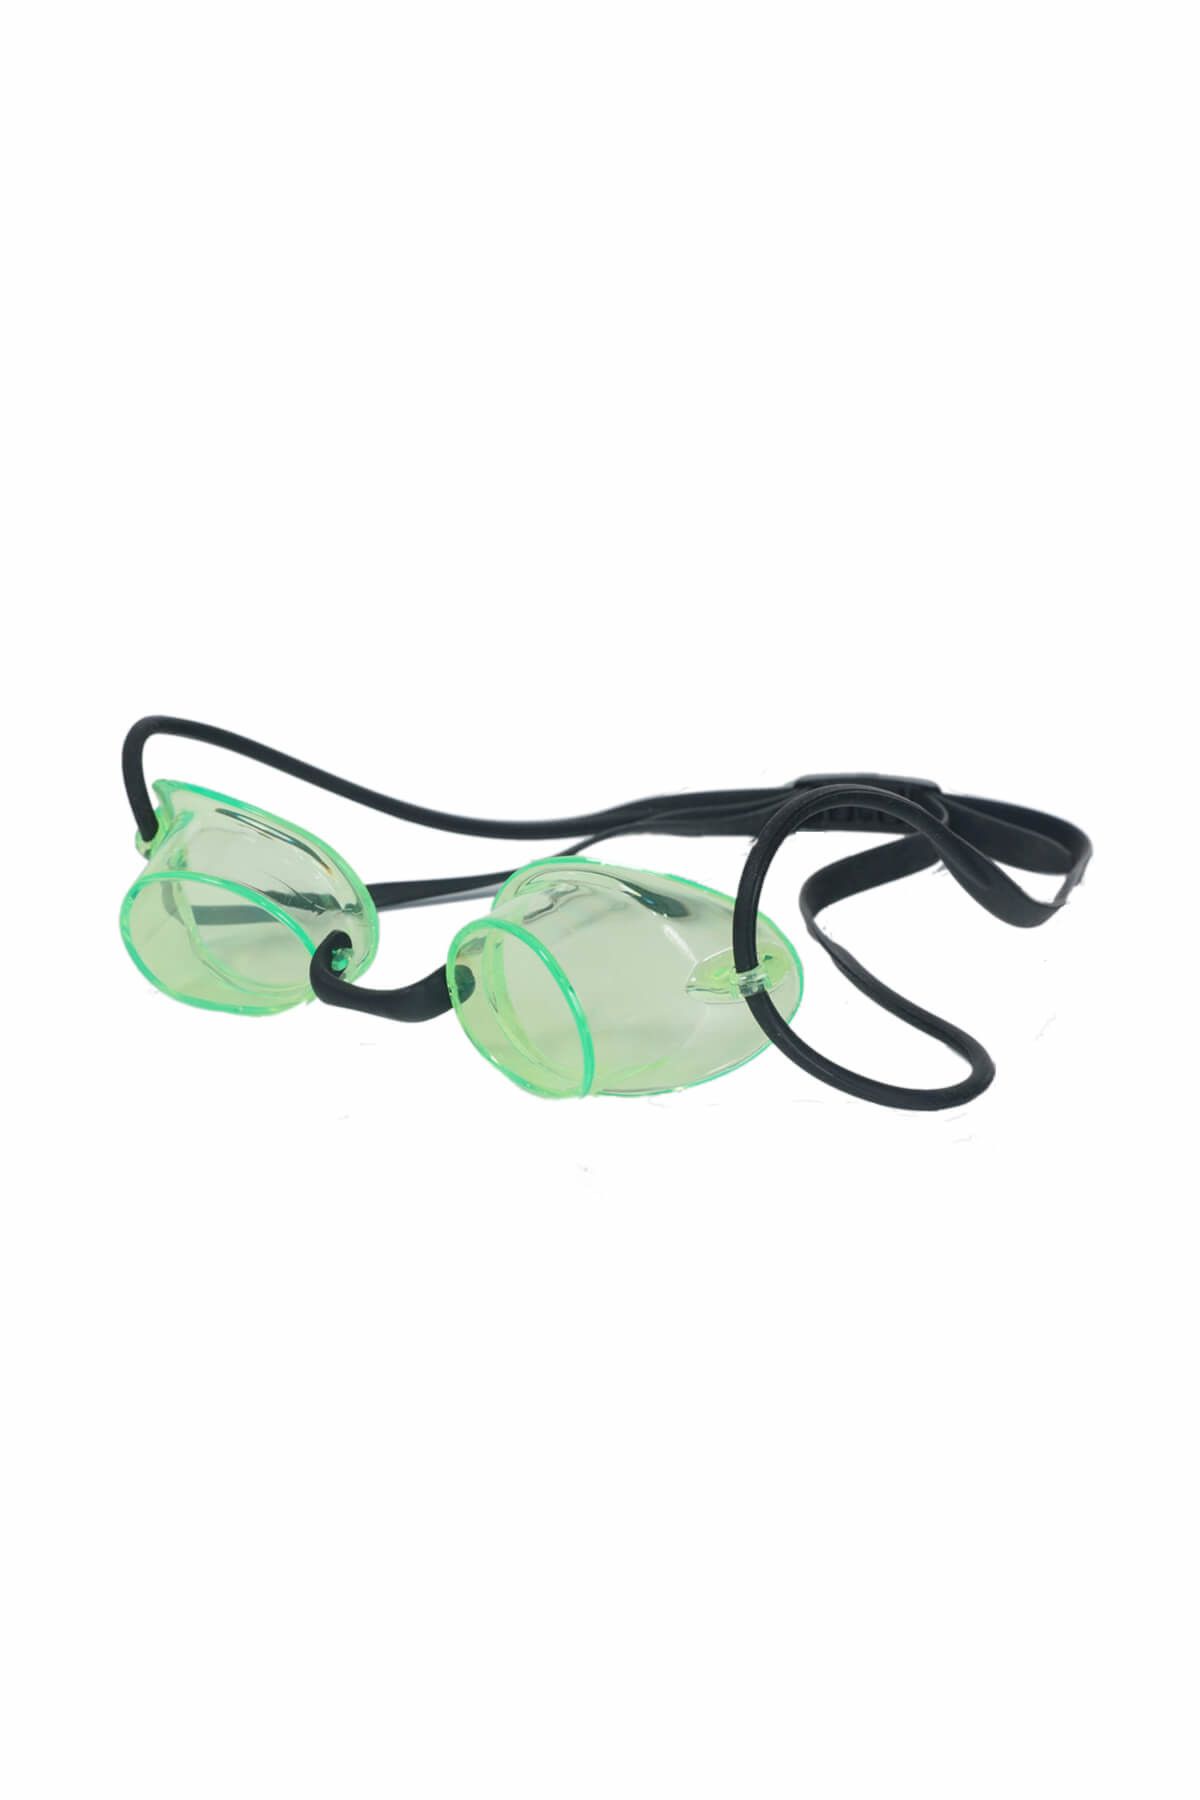 Rubenis Swimfit Yeşil Camlı Yüzücü Gözlüğü - 606220